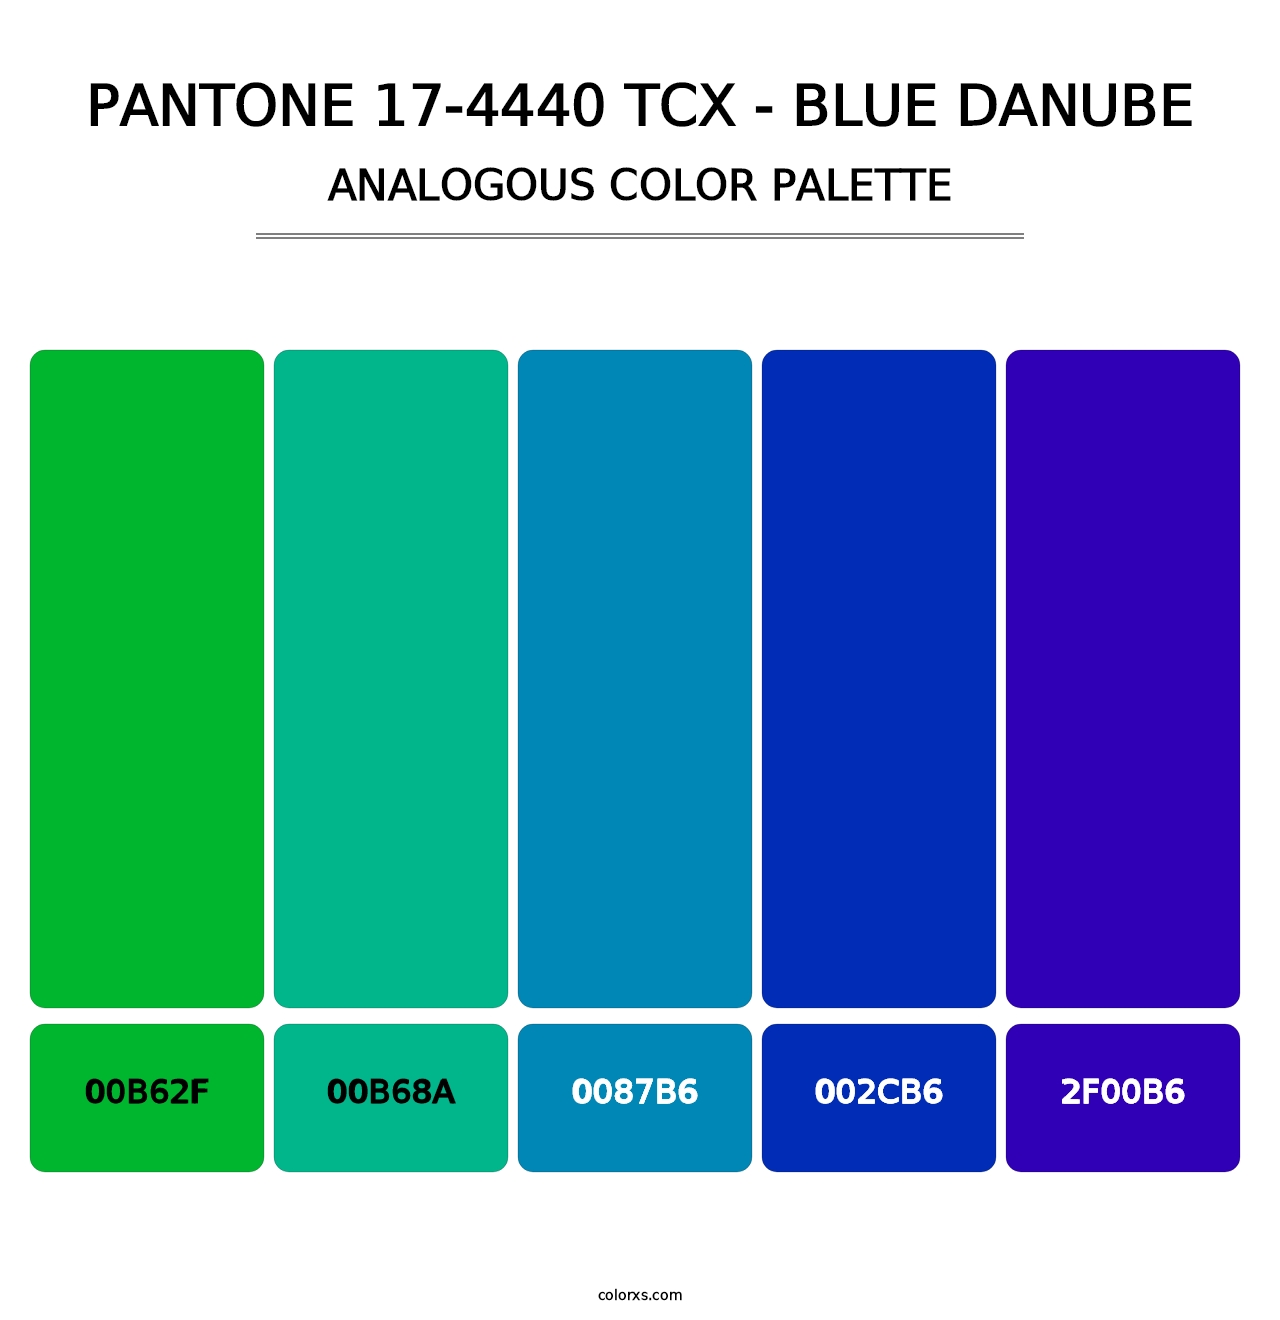 PANTONE 17-4440 TCX - Blue Danube - Analogous Color Palette